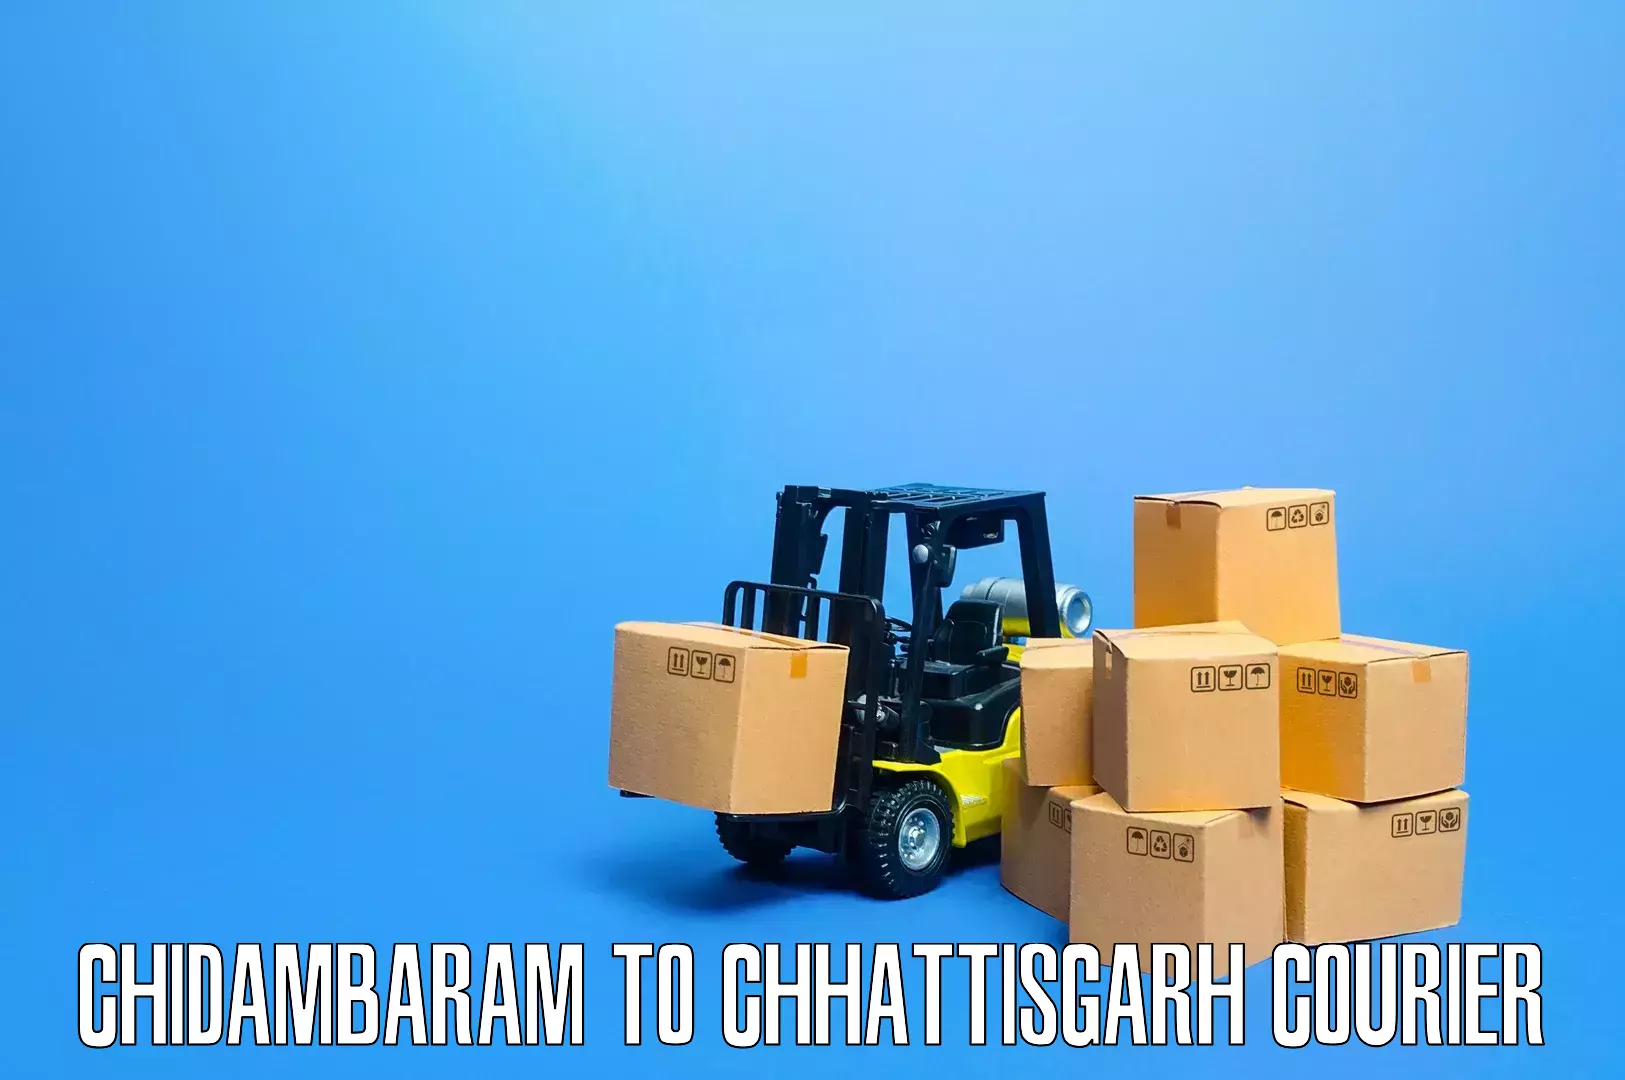 Nationwide furniture transport Chidambaram to Patna Chhattisgarh